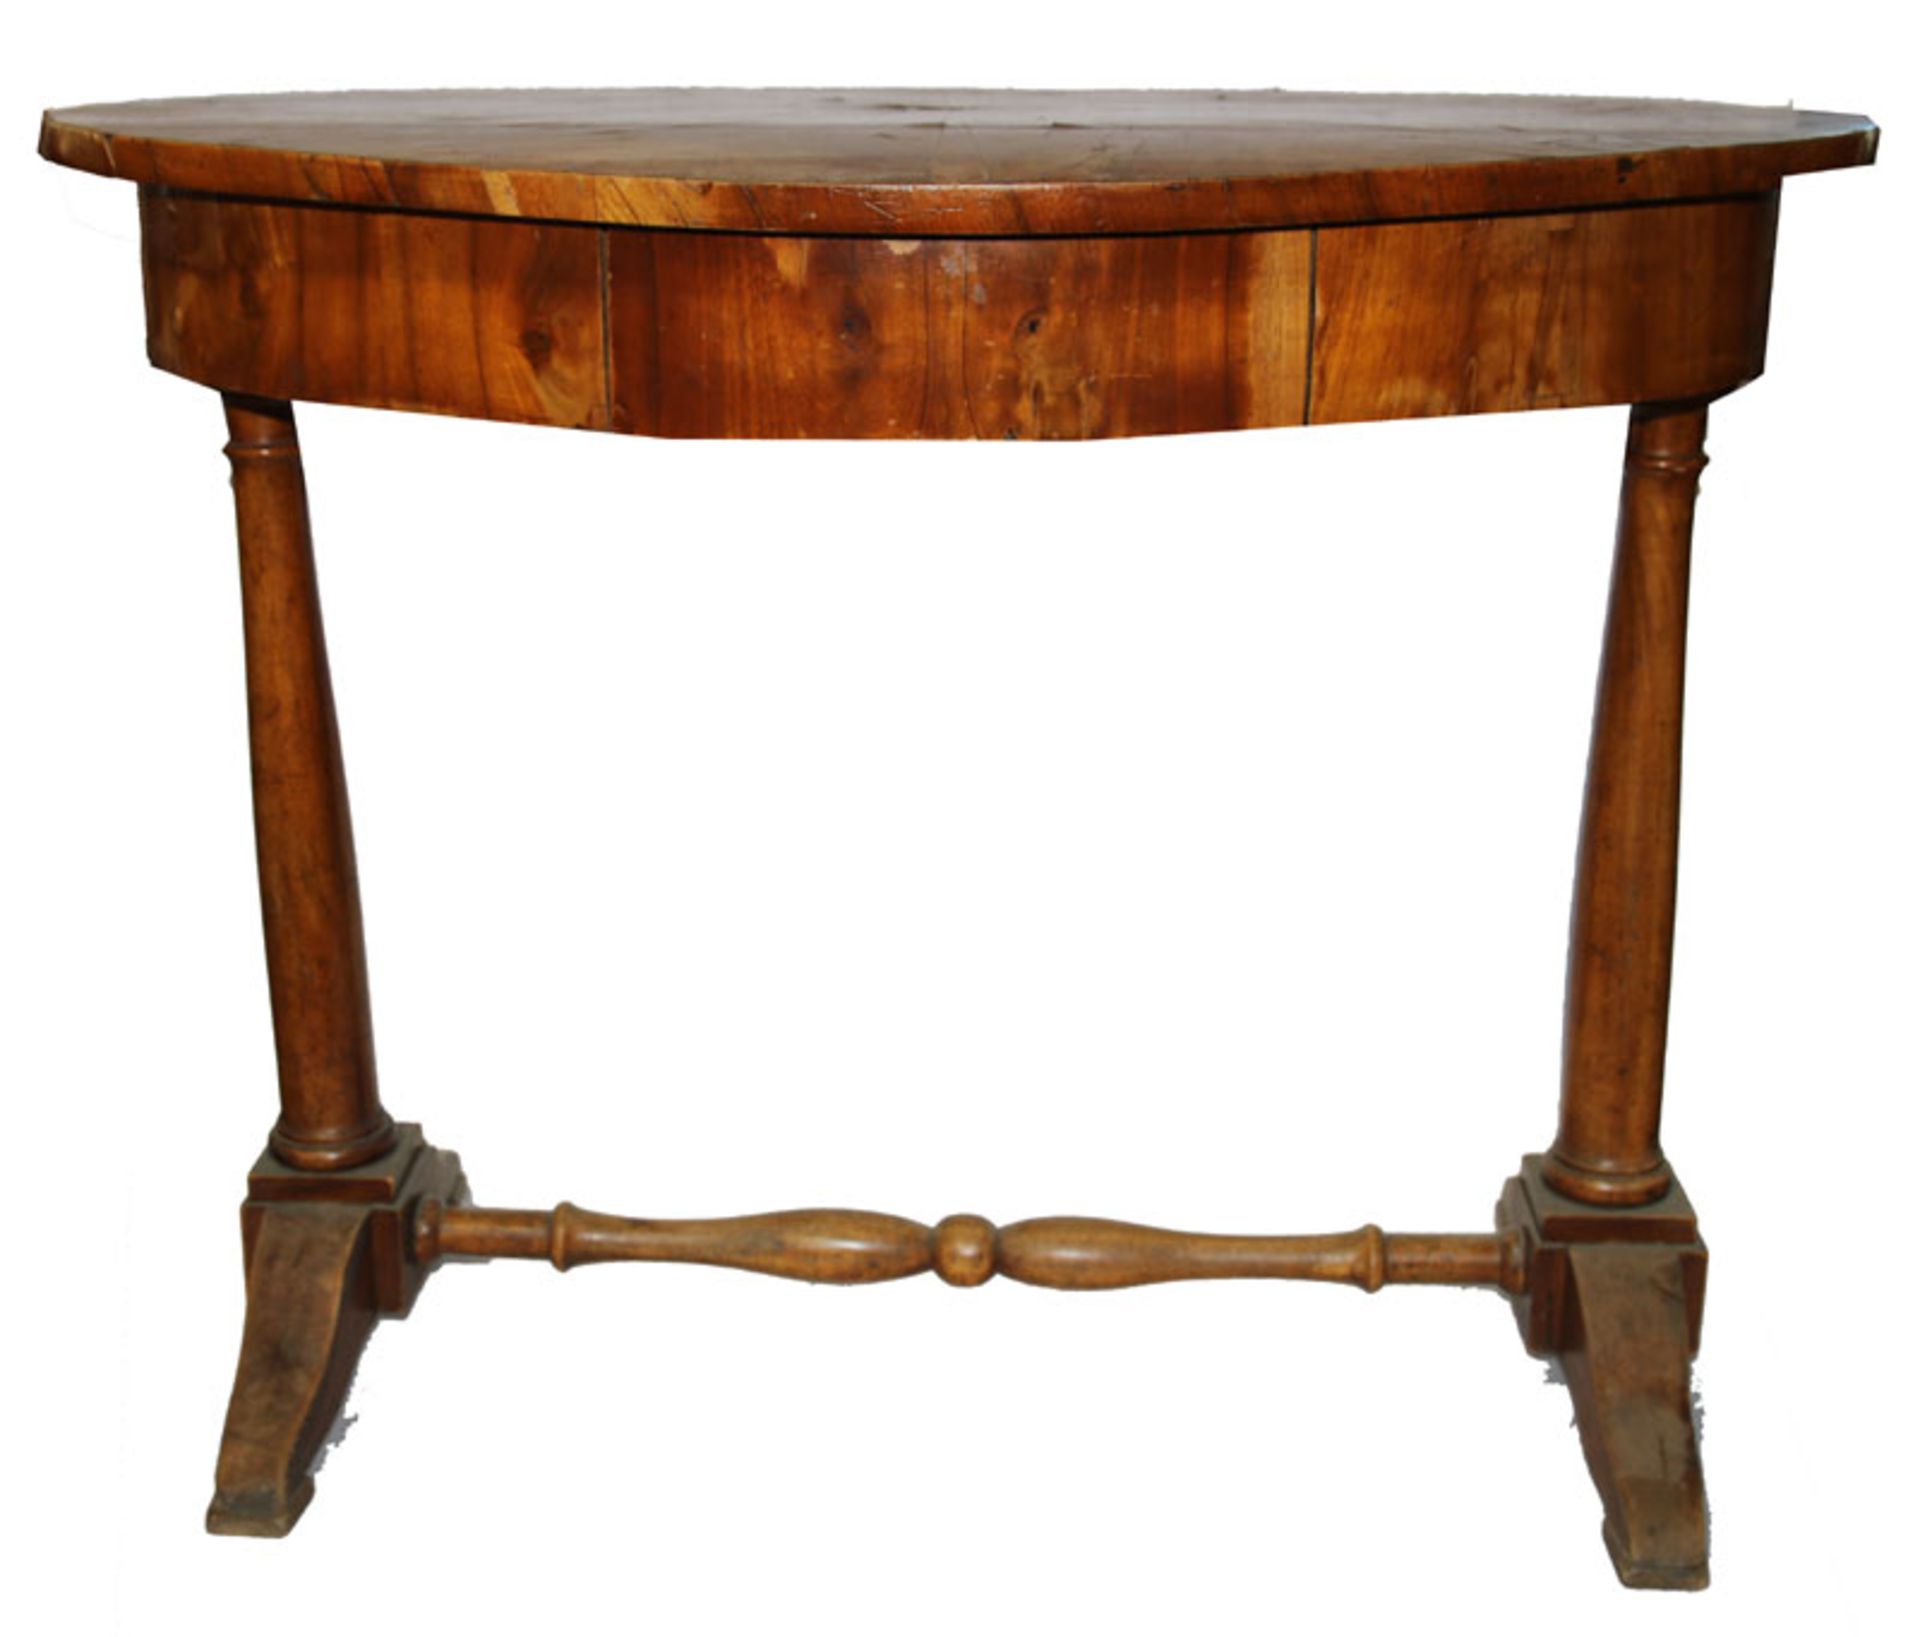 Ovaler Tisch auf Säulenfüßen mit gedrechselter Querstange, Korpus mit 1 Schublade, 19.